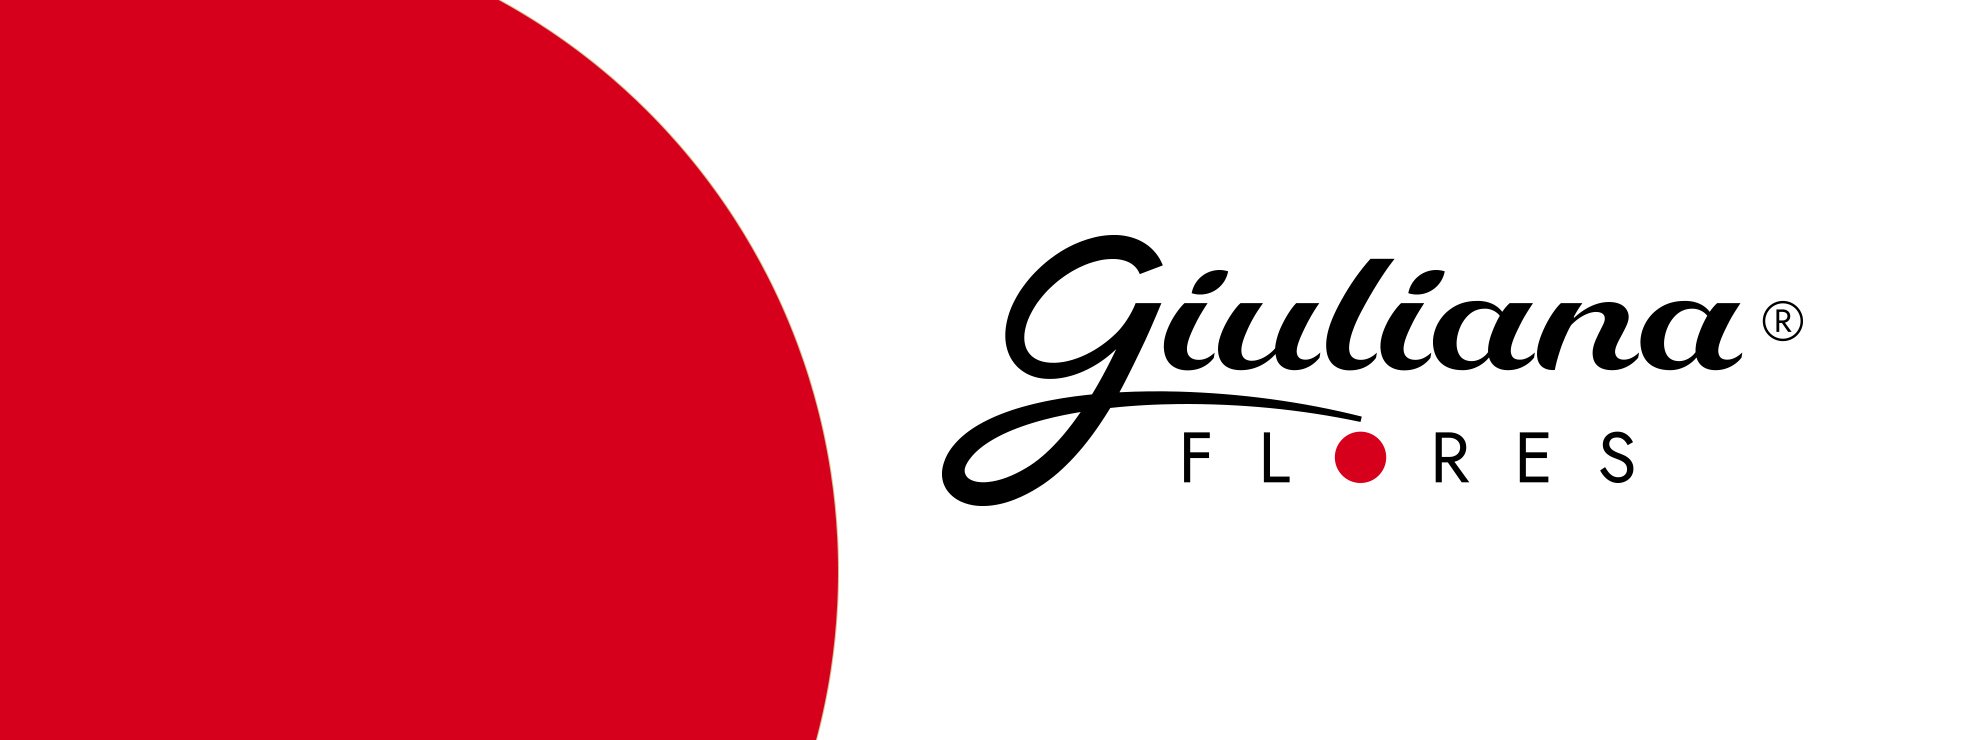 Você sabia que depois de 30 anos, a Giuliana Flores mudou a sua logomarca?